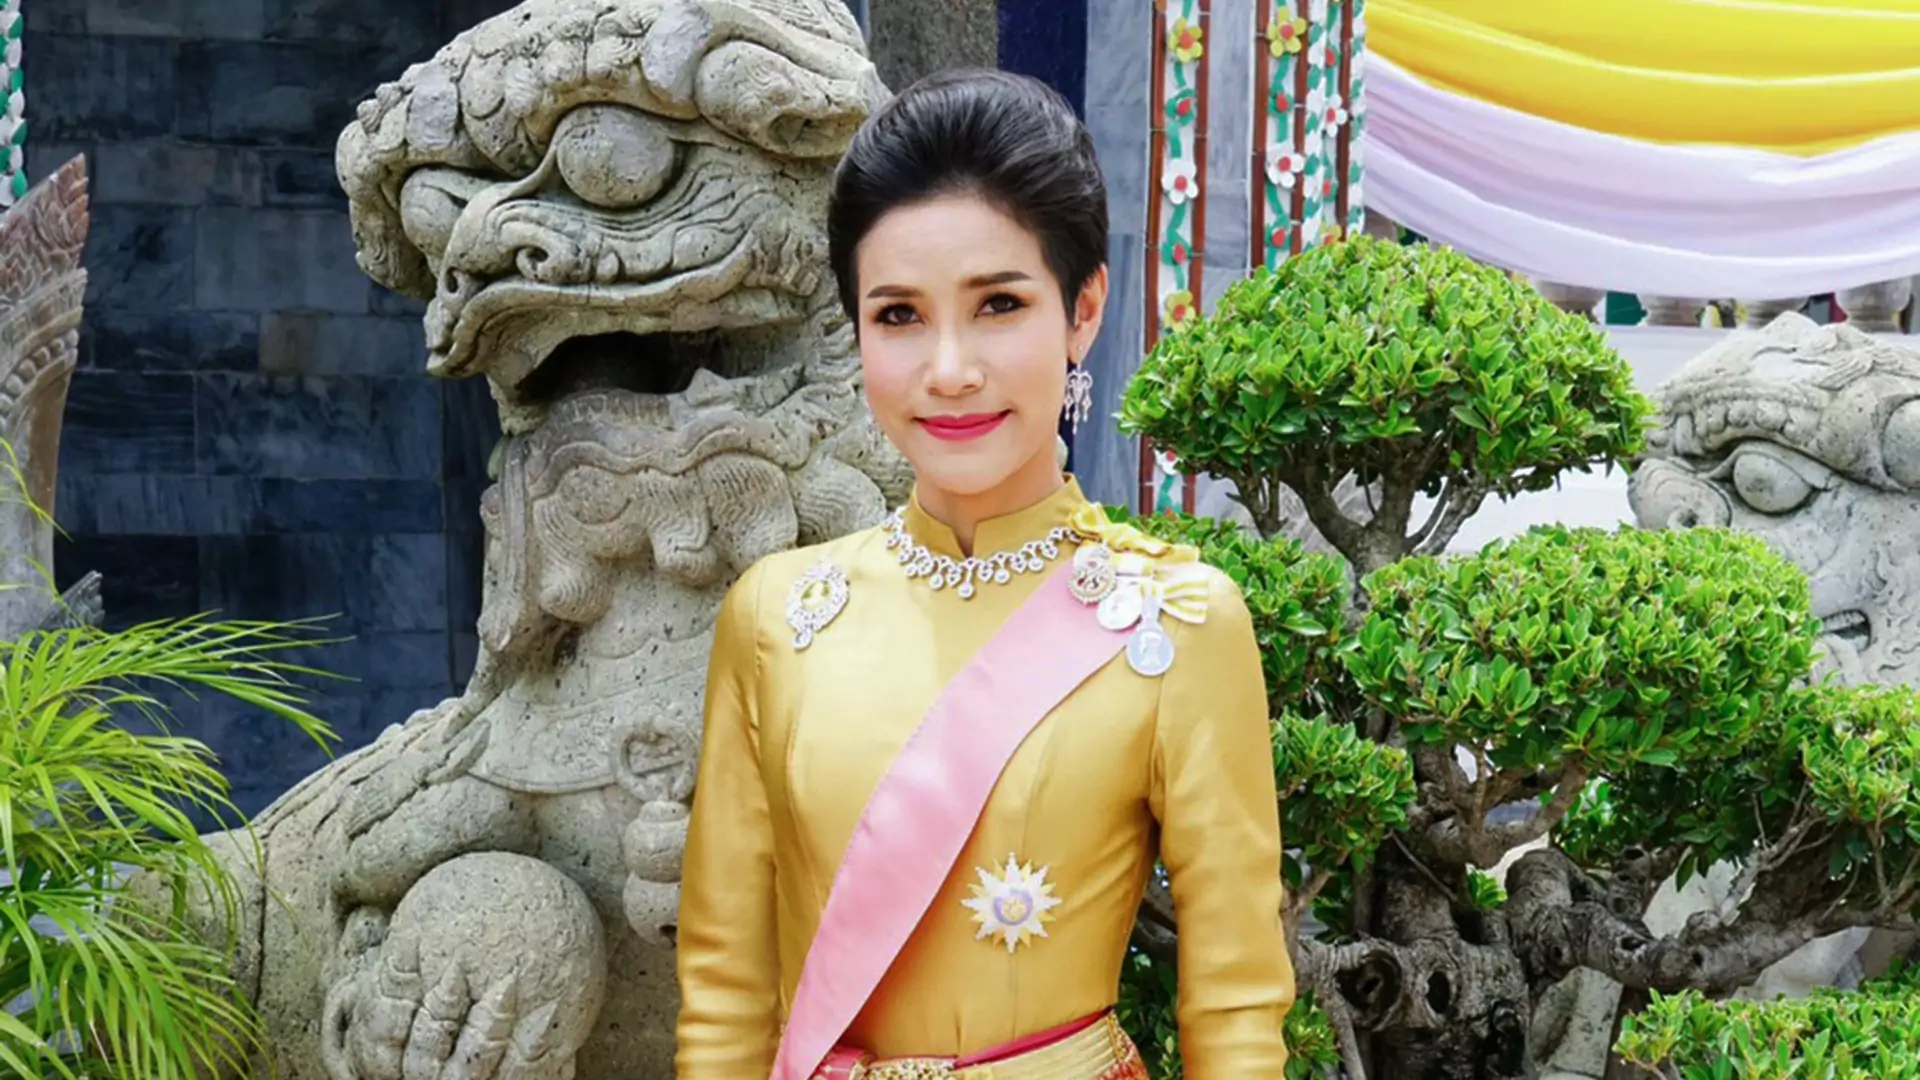 Król Tajlandii ogłosił, że jego kochanka jest "nieskażona" i przywrócił jej przywileje